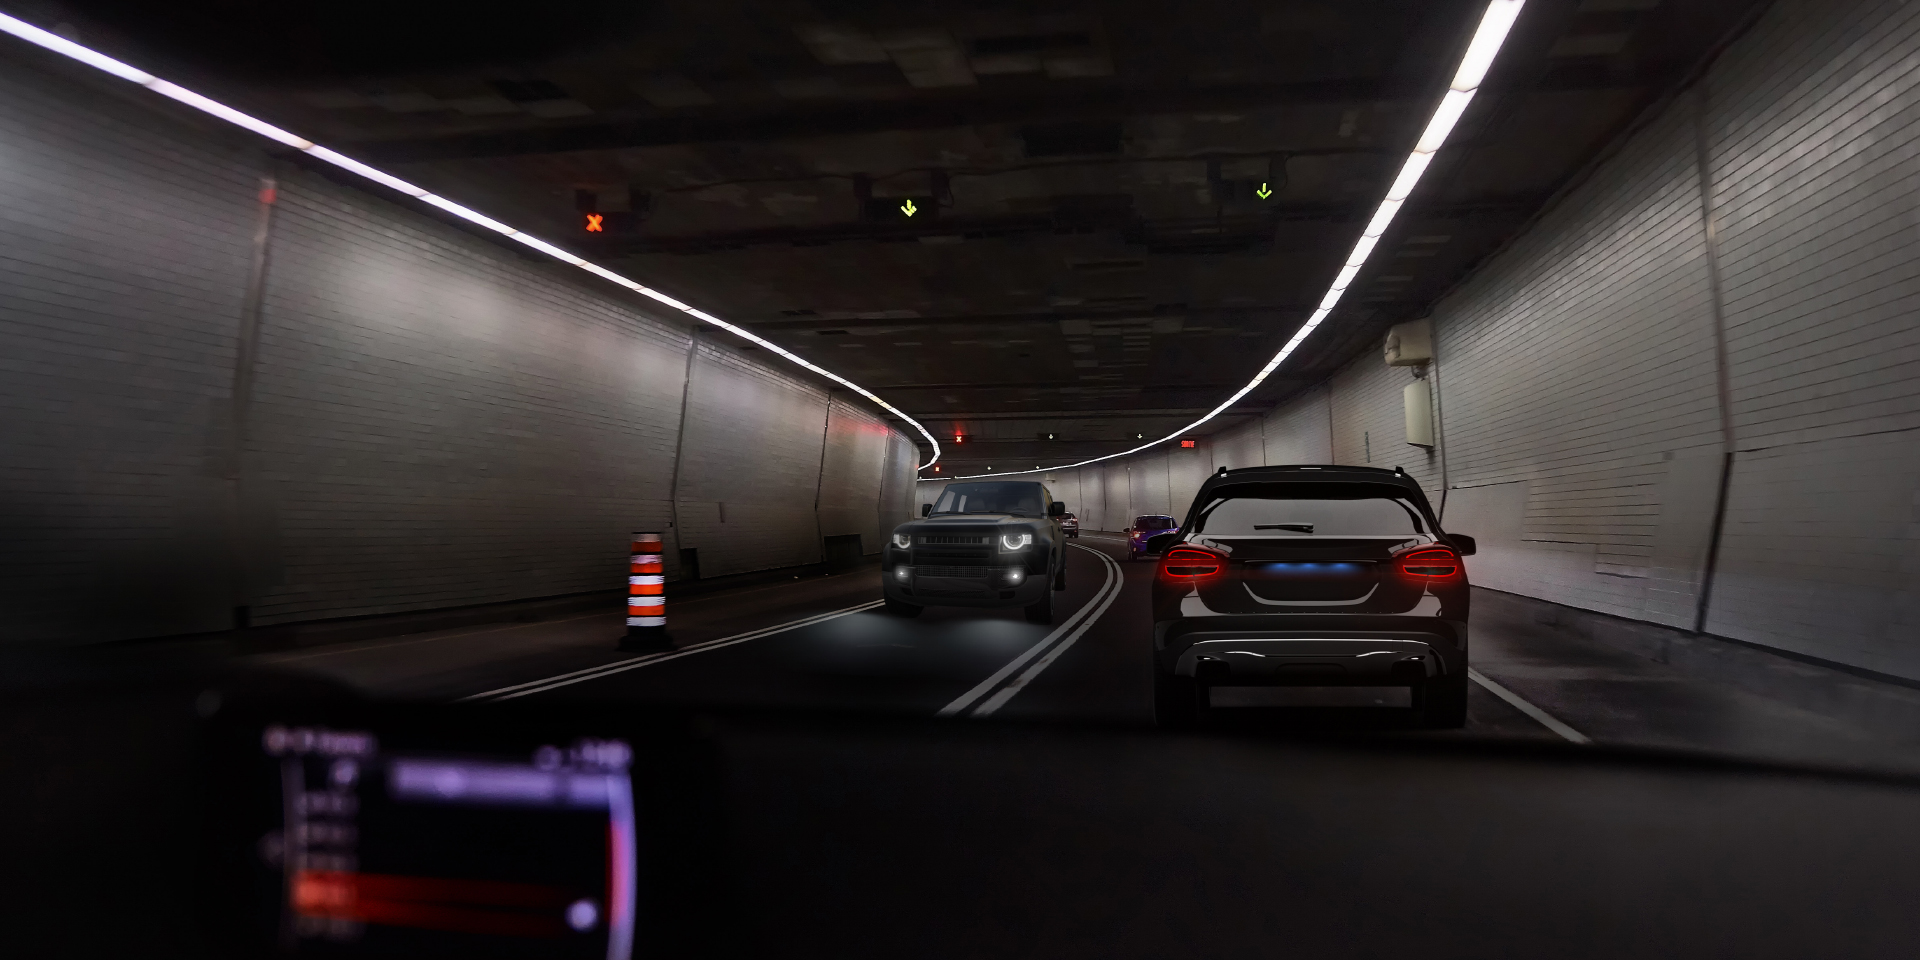 Kaksi näkökulmakuvaa kuljettajasta, joka ajaa tunnelissa ja vastaan tulee muuta liikennettä. Toisessa kuvassa näkyy häikäisyä autojen ja tunnelin valoista, ja toisessa kuvassa häikäisyä on selkeästi vähemmän.